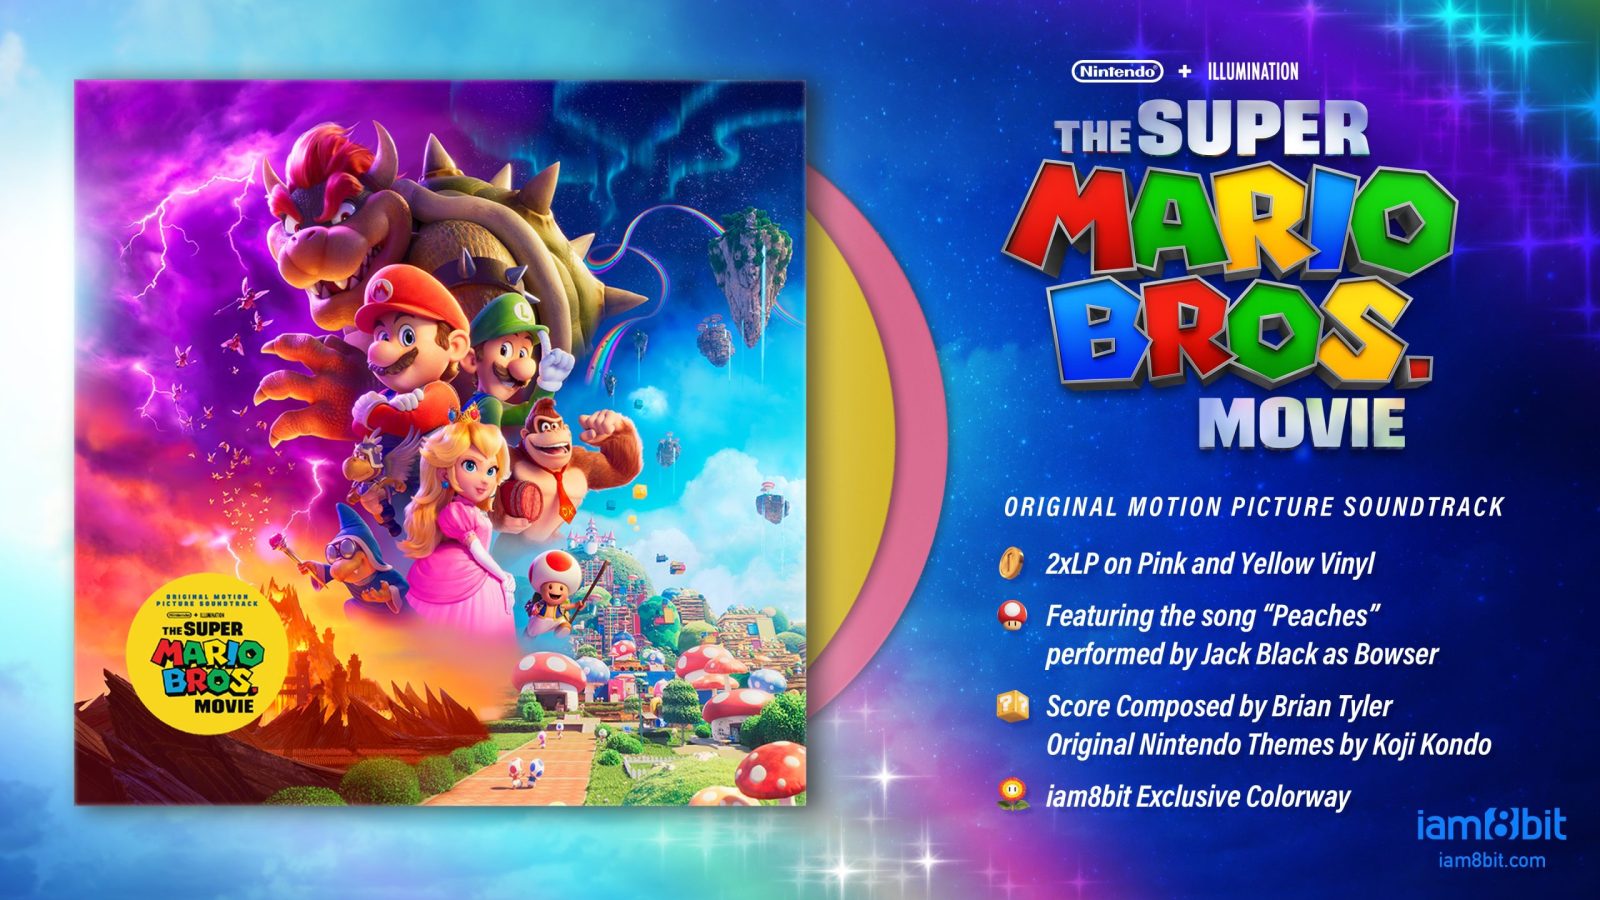 Super Mario Bros. Movie': Jack Black Wrote Bowser Song